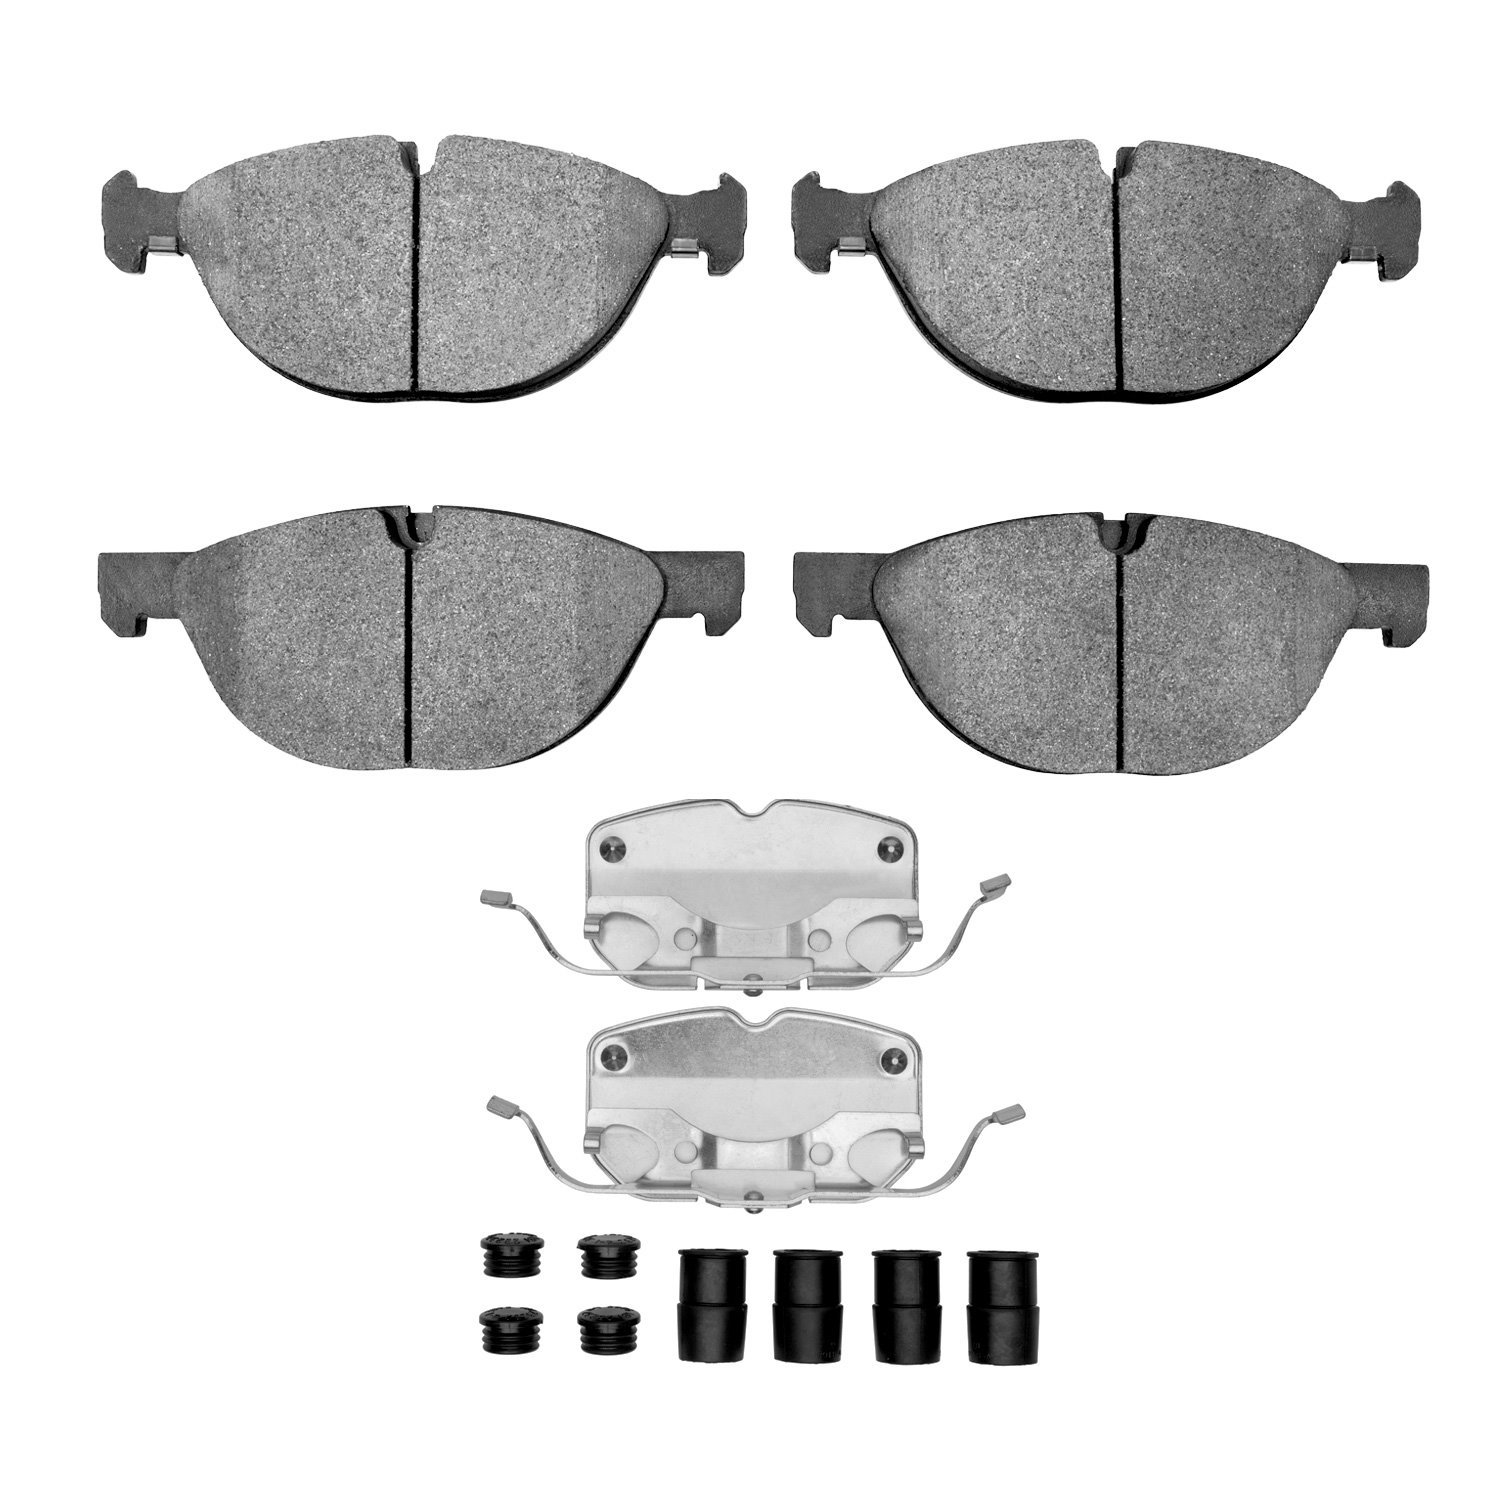 1552-1381-01 5000 Advanced Low-Metallic Brake Pads & Hardware Kit, 2008-2014 BMW, Position: Front